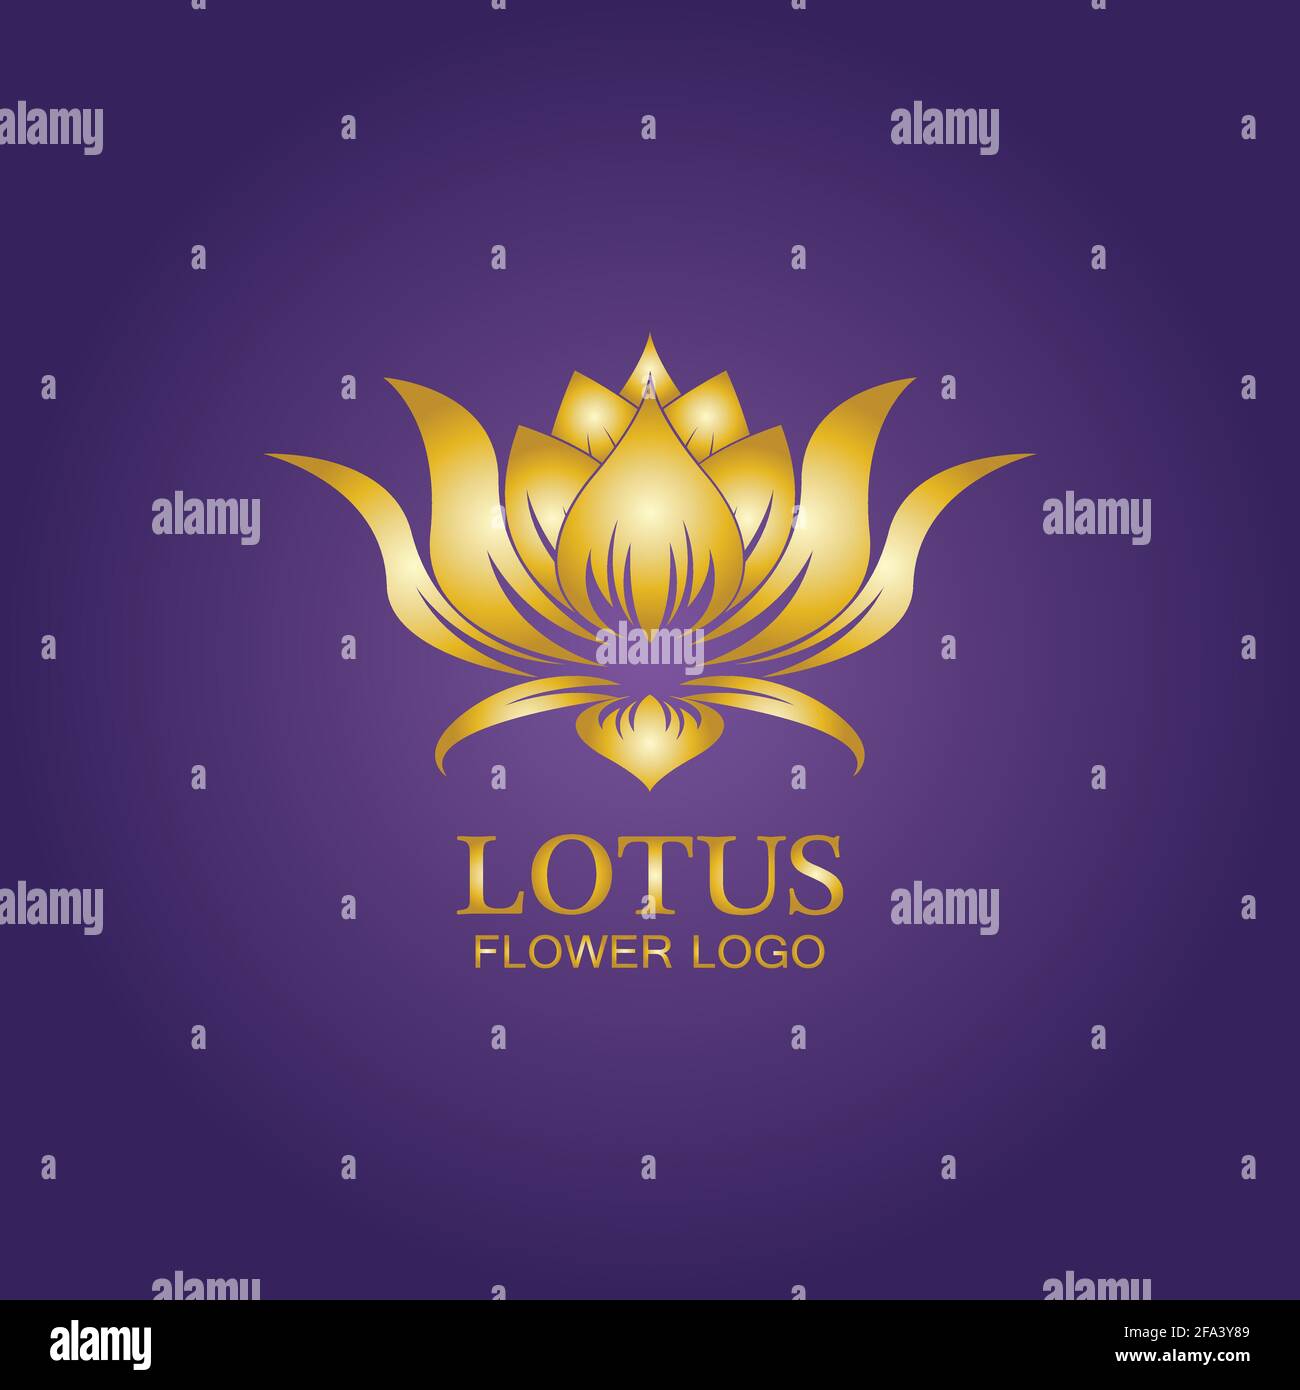 Lotus And Lotus Flower Logos - 314+ Best Lotus And Lotus Flower Logo Ideas.  Free Lotus And Lotus Flower Logo Maker. | 99designs